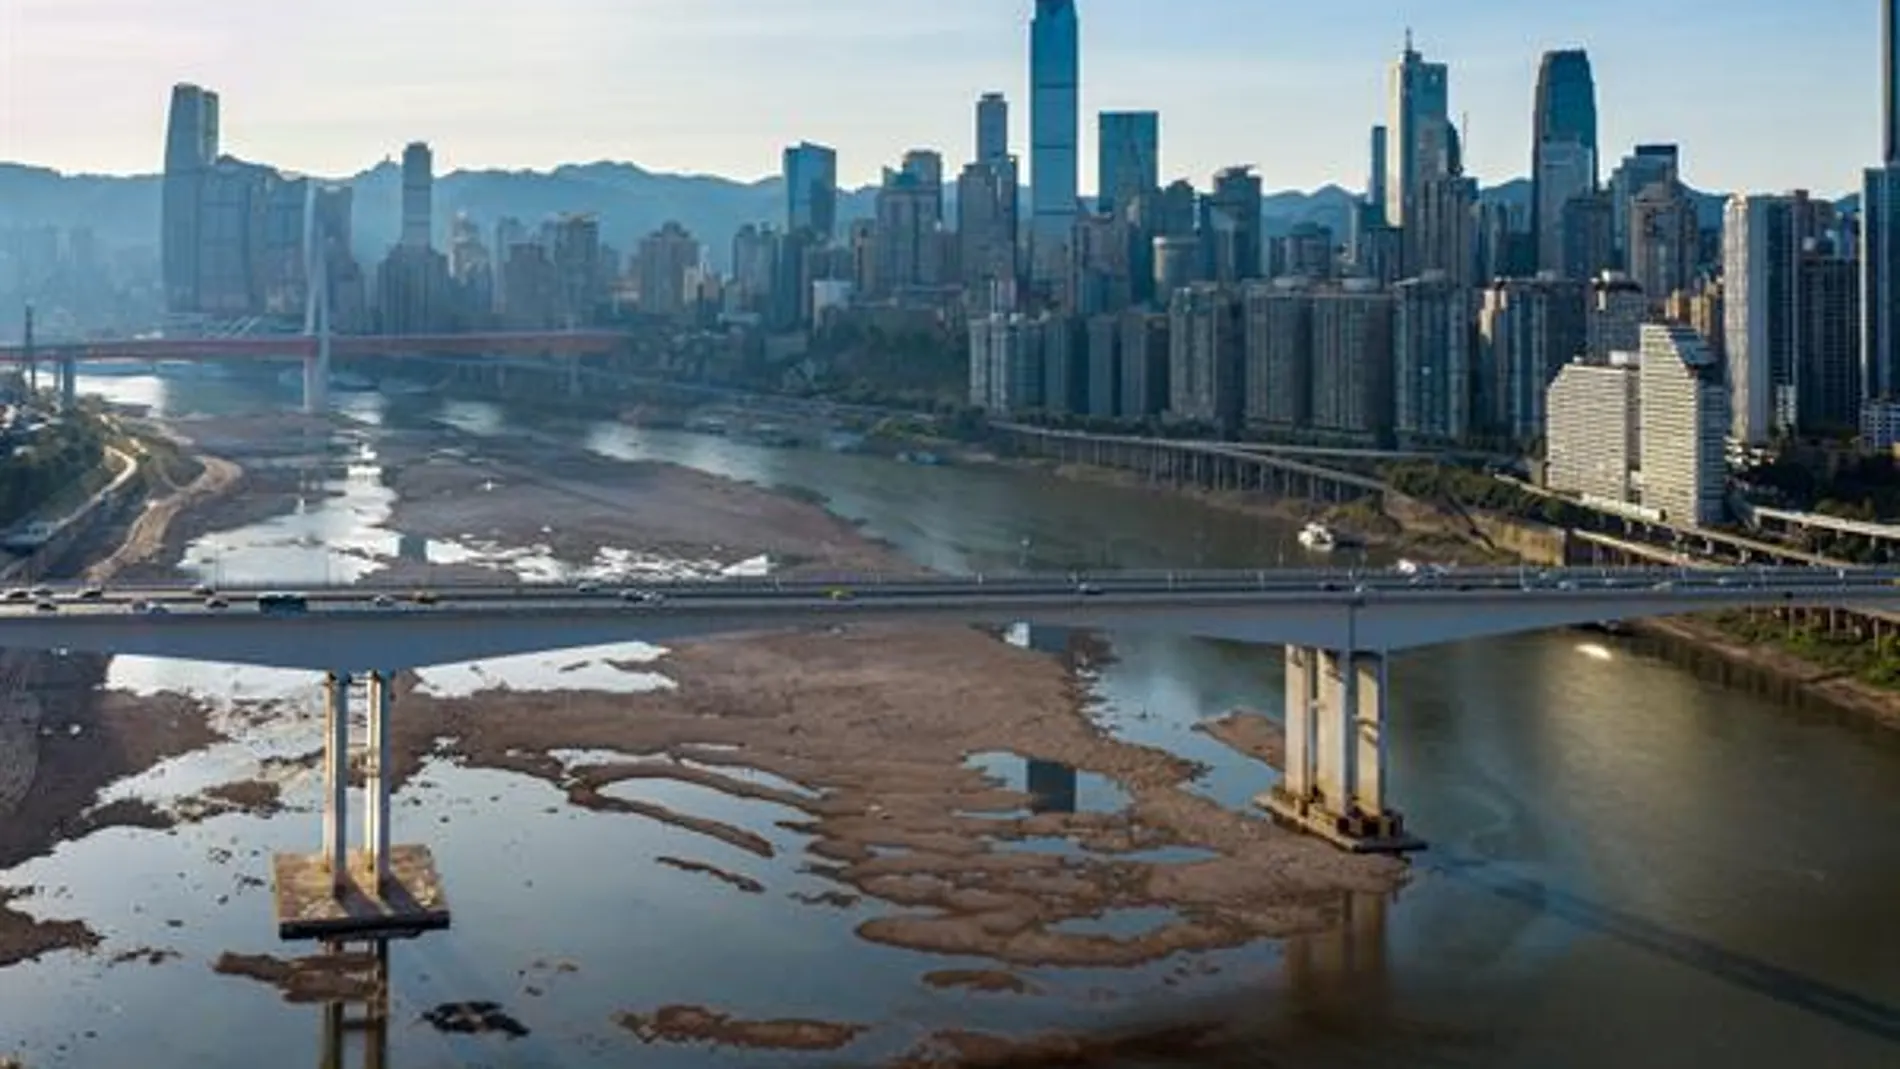 Cauce seco del río Jialing, uno de los afluentes del río Yangtze, en Chongqing